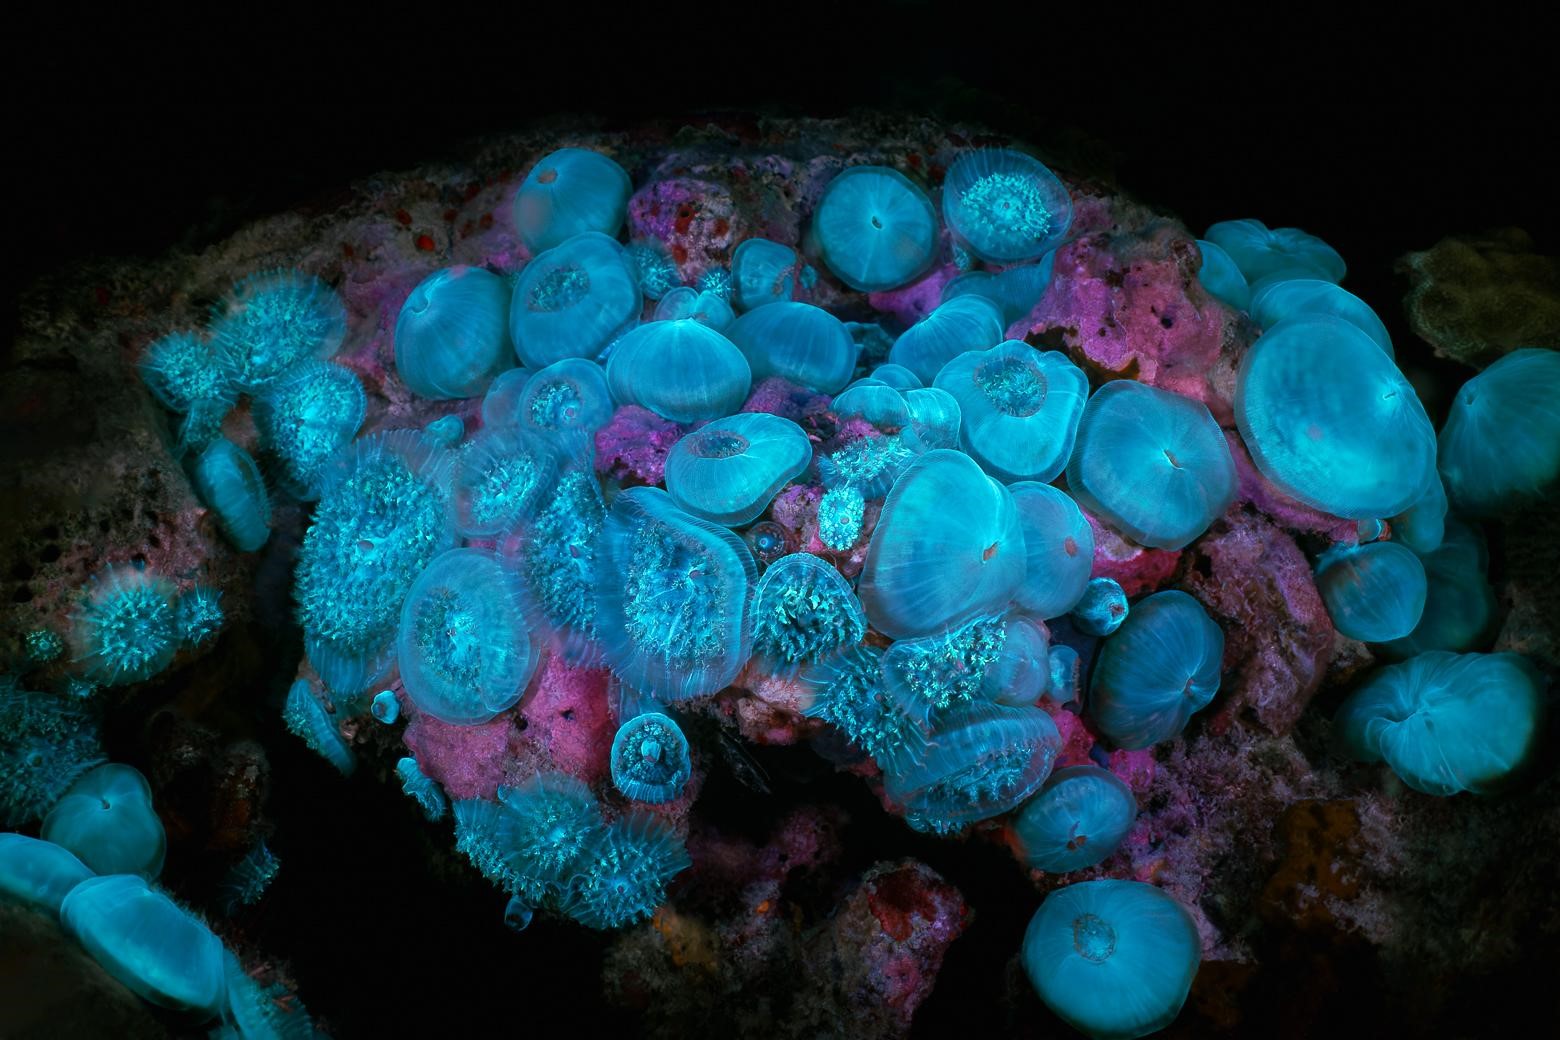 Colonie de Corallimorphaire verruqueux (Rhodactis osculifera) © Fabien Lefebvre